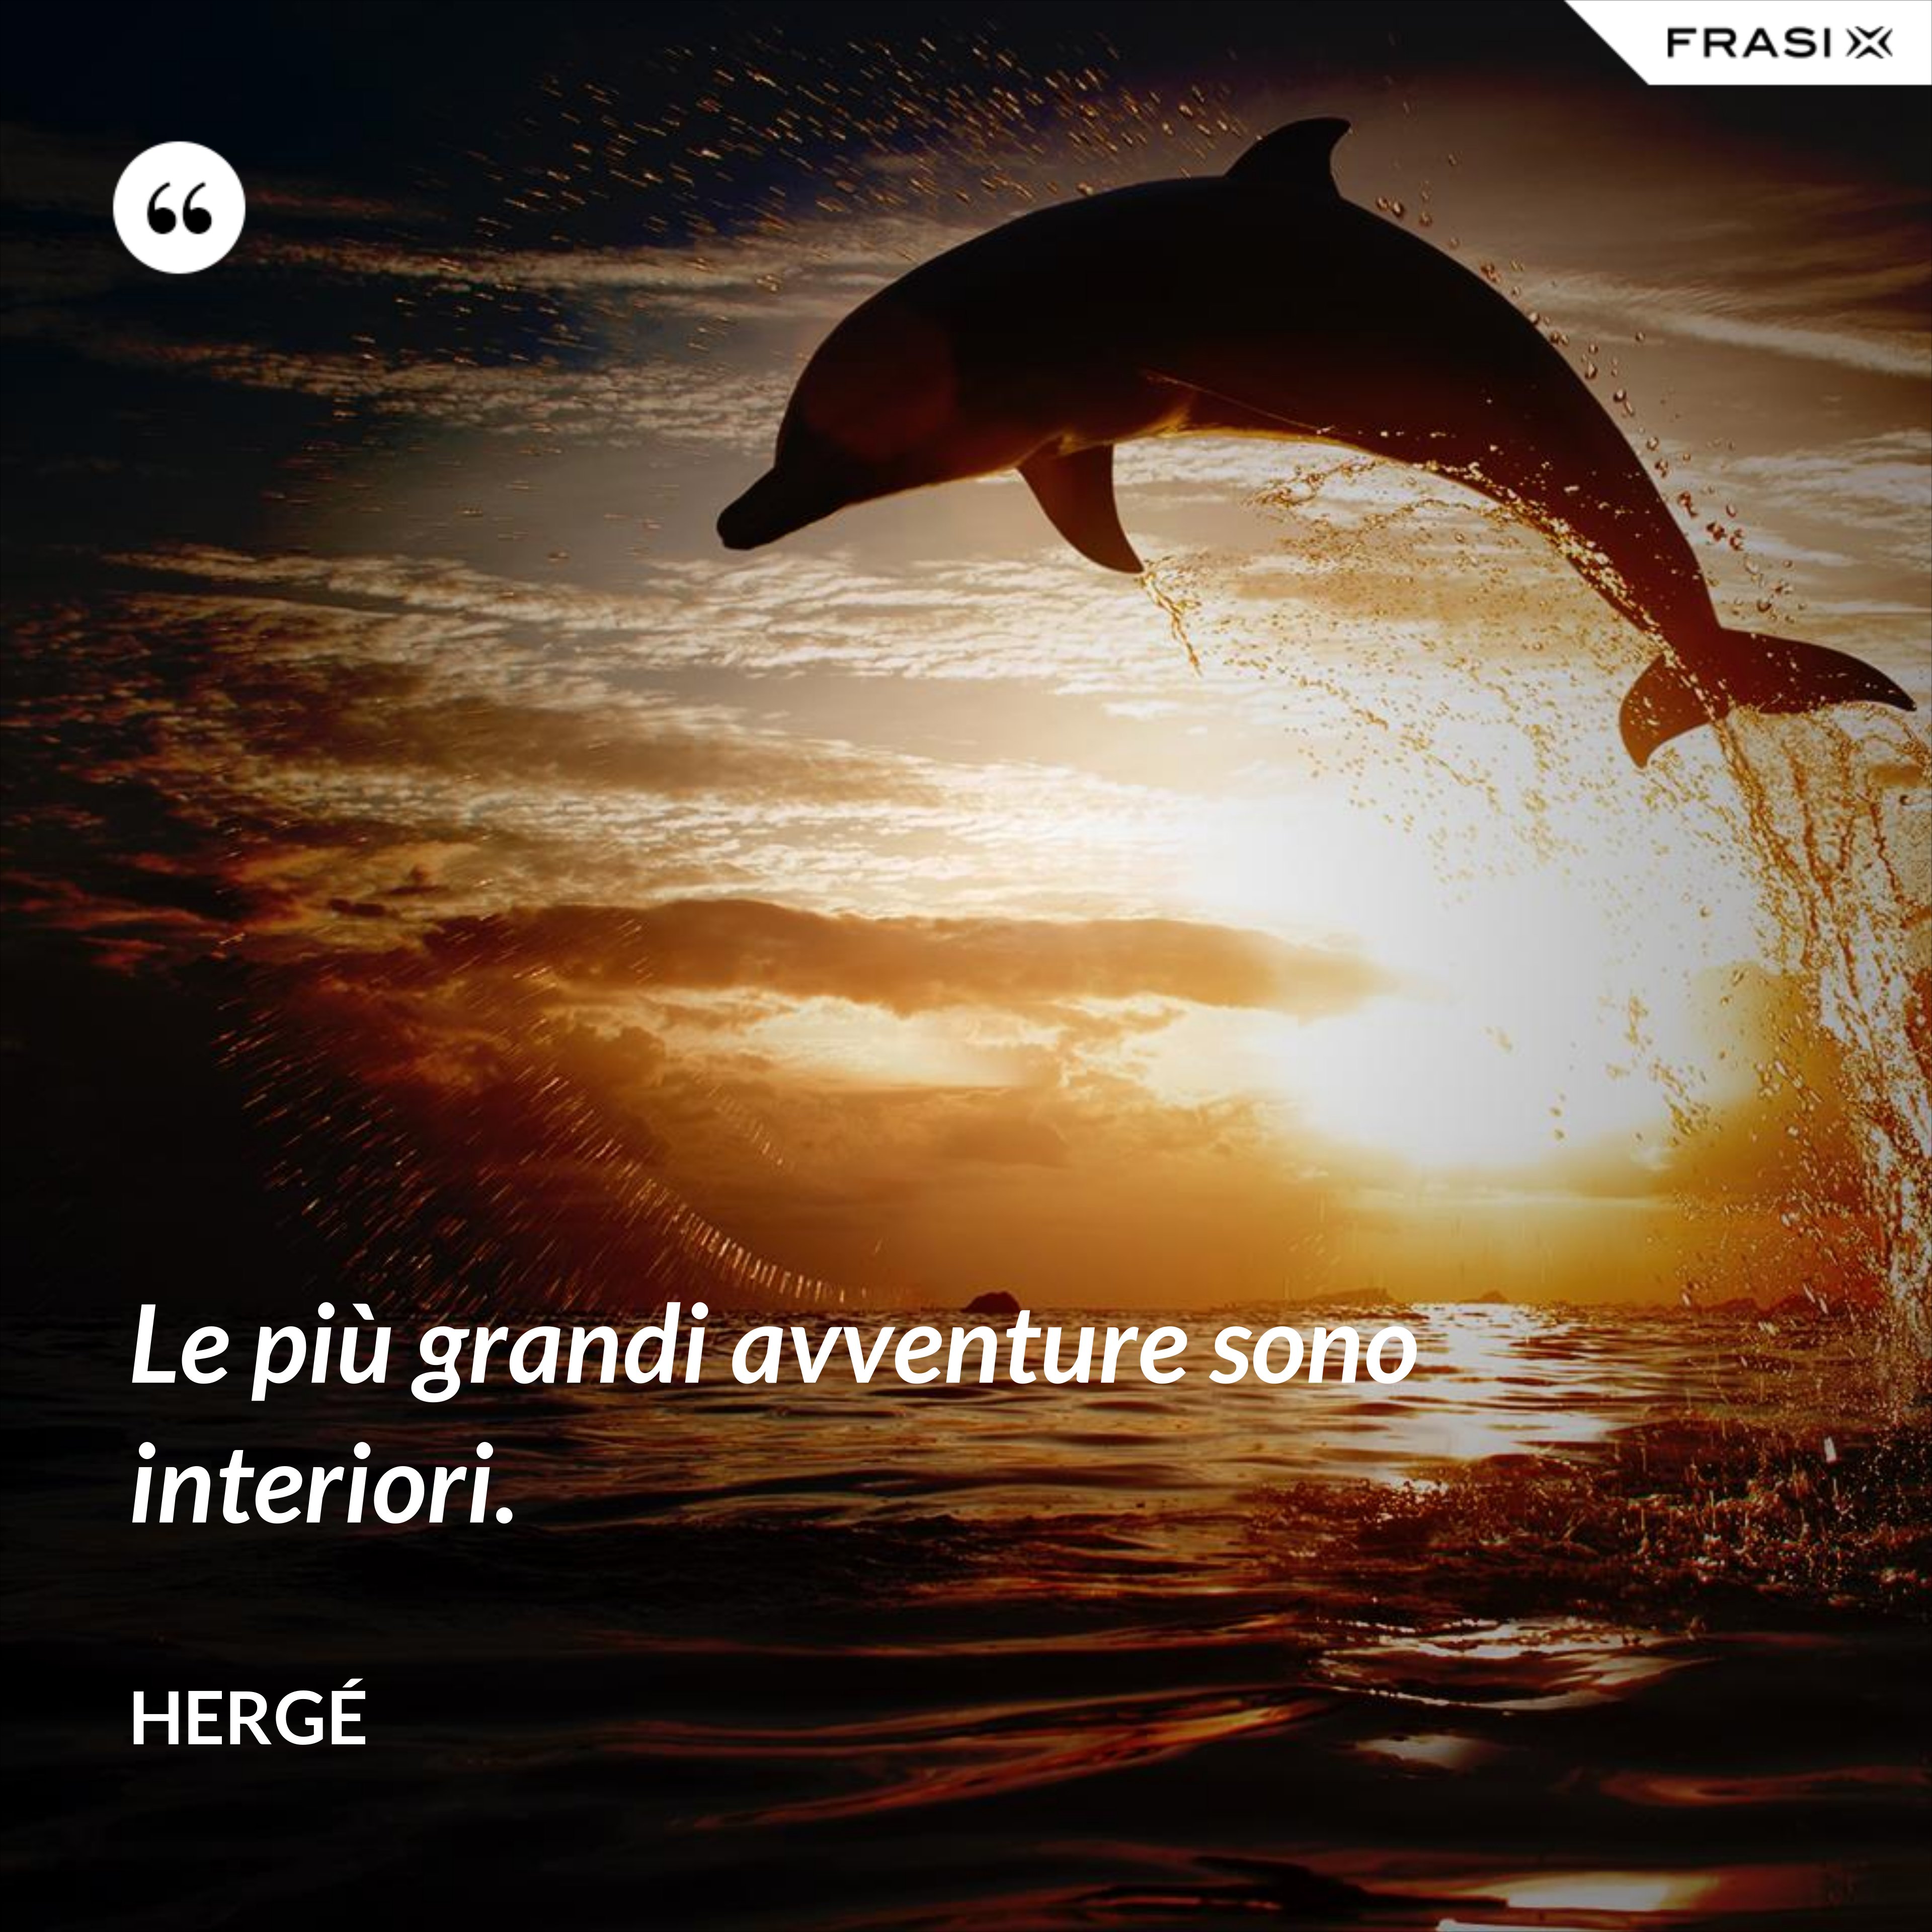 Le più grandi avventure sono interiori. - Hergé